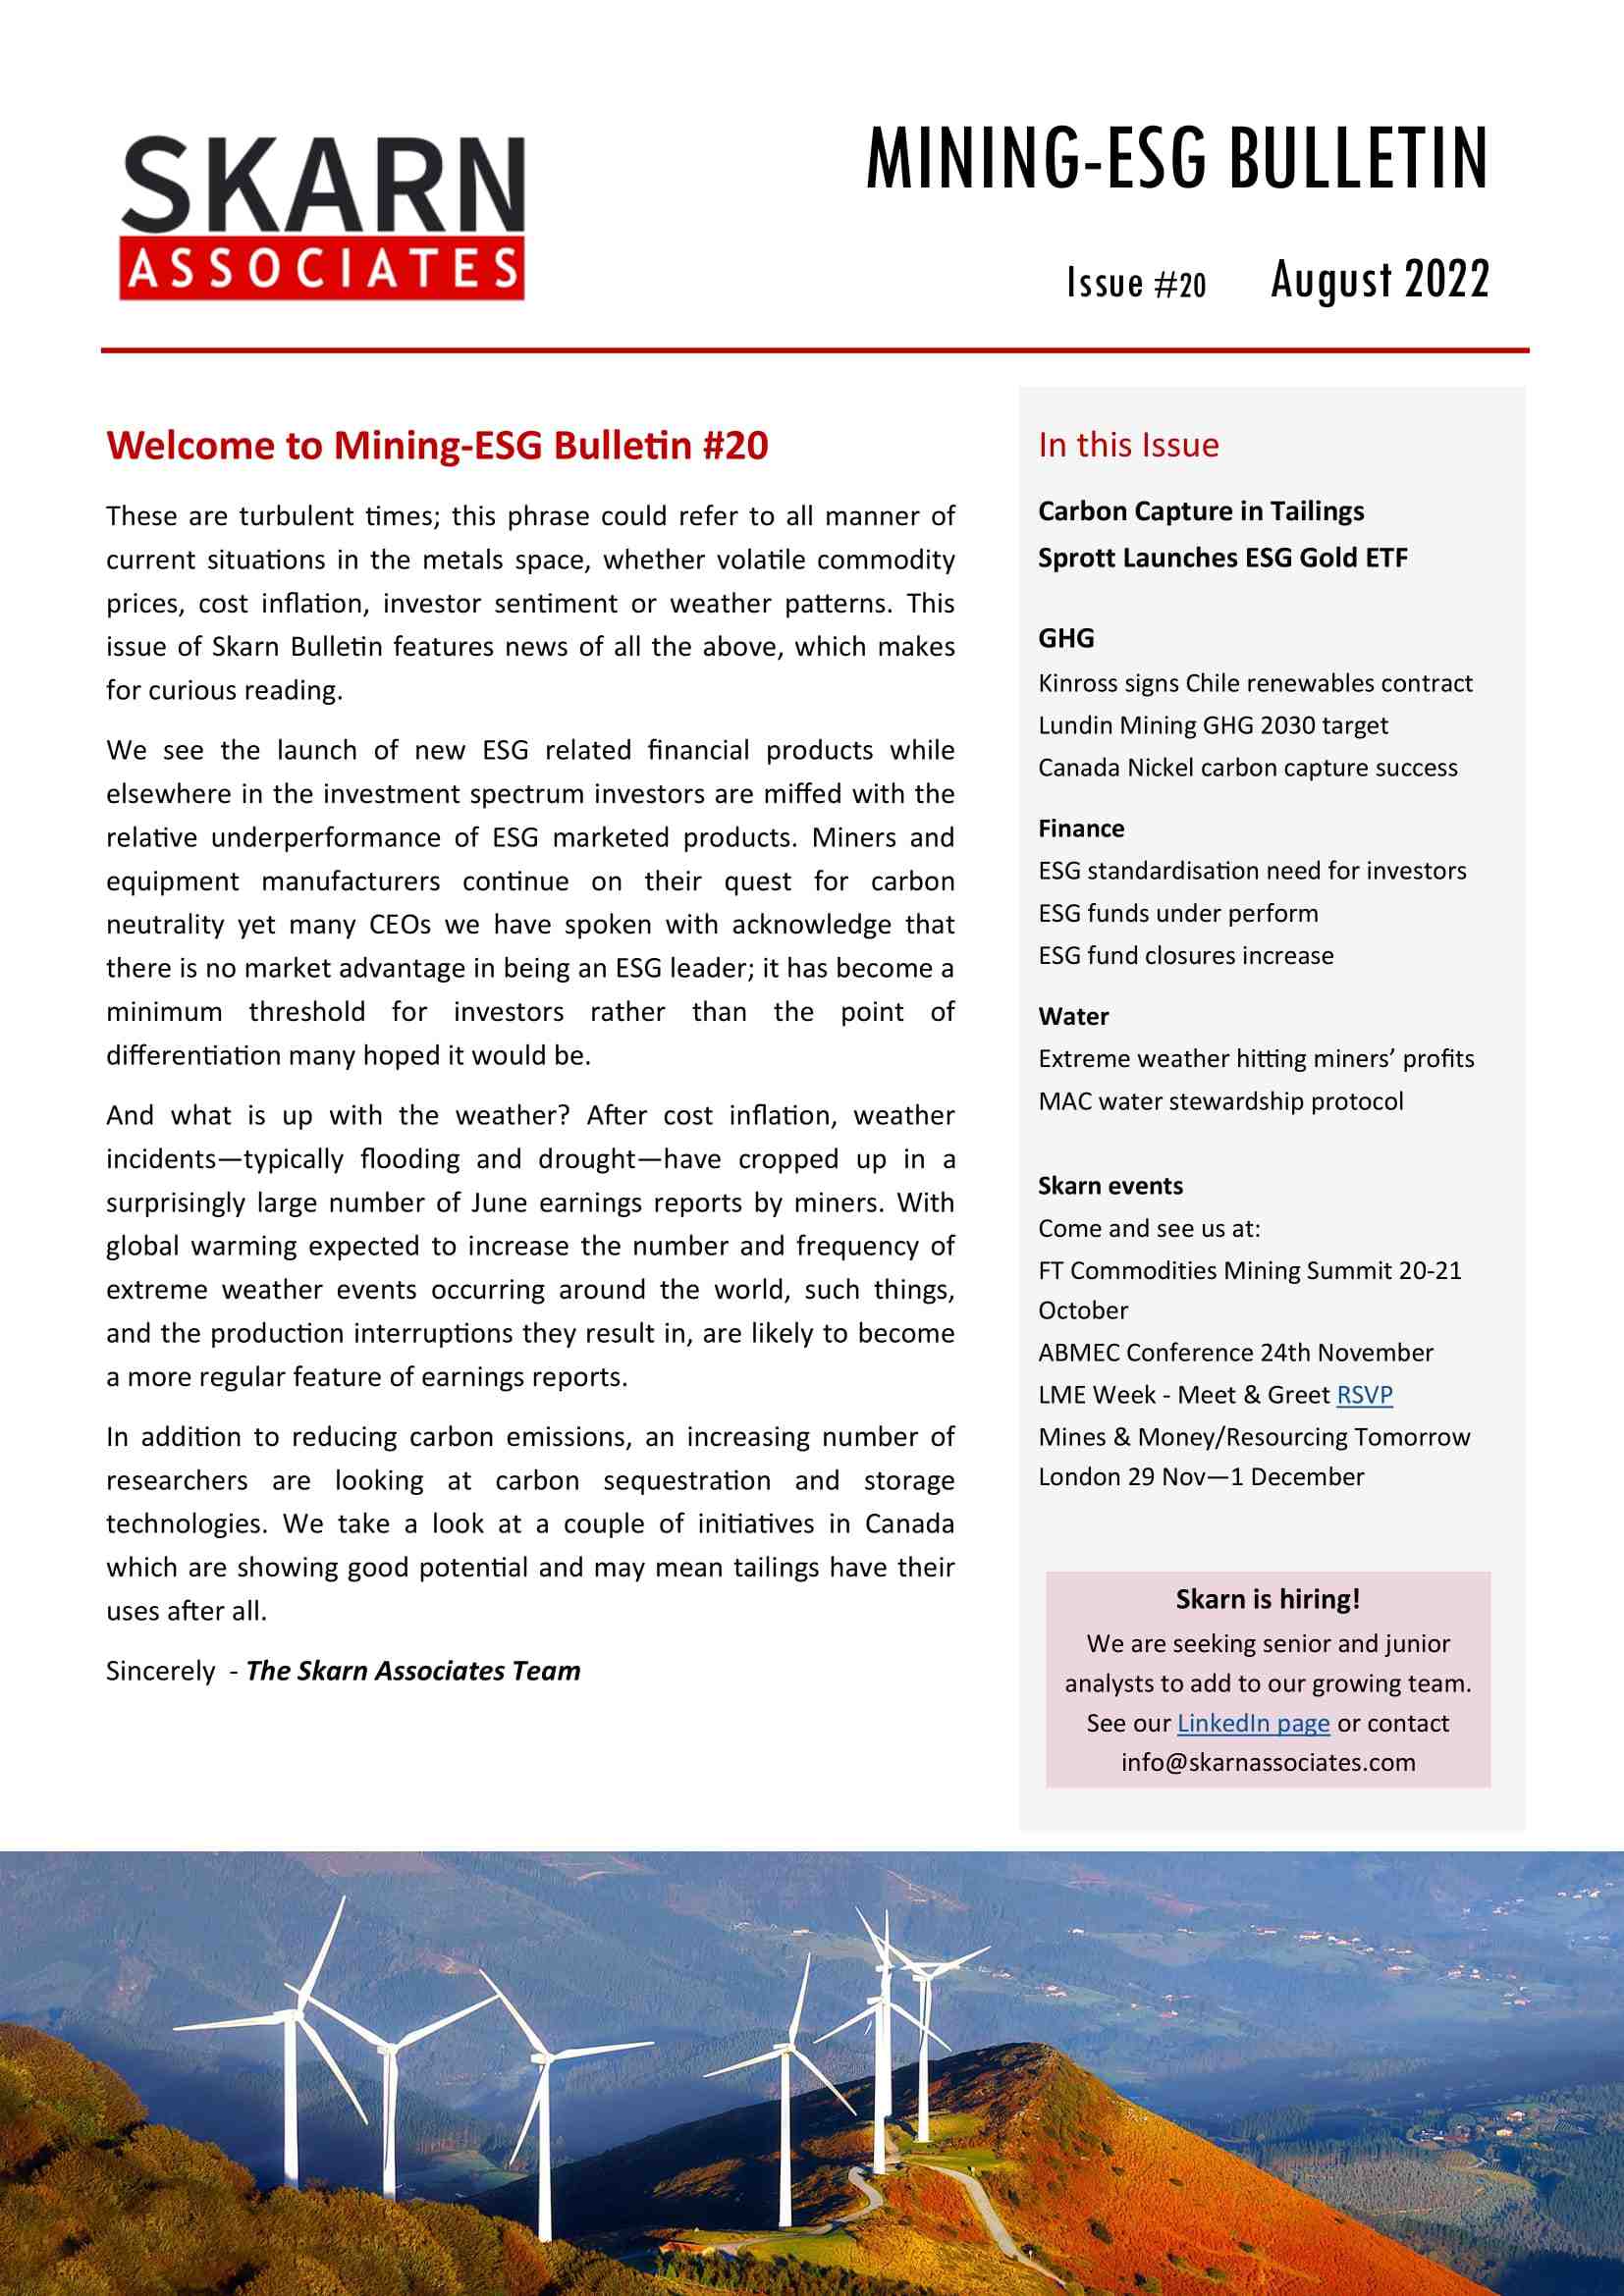 Skarn Mining-ESG Bulletin #20